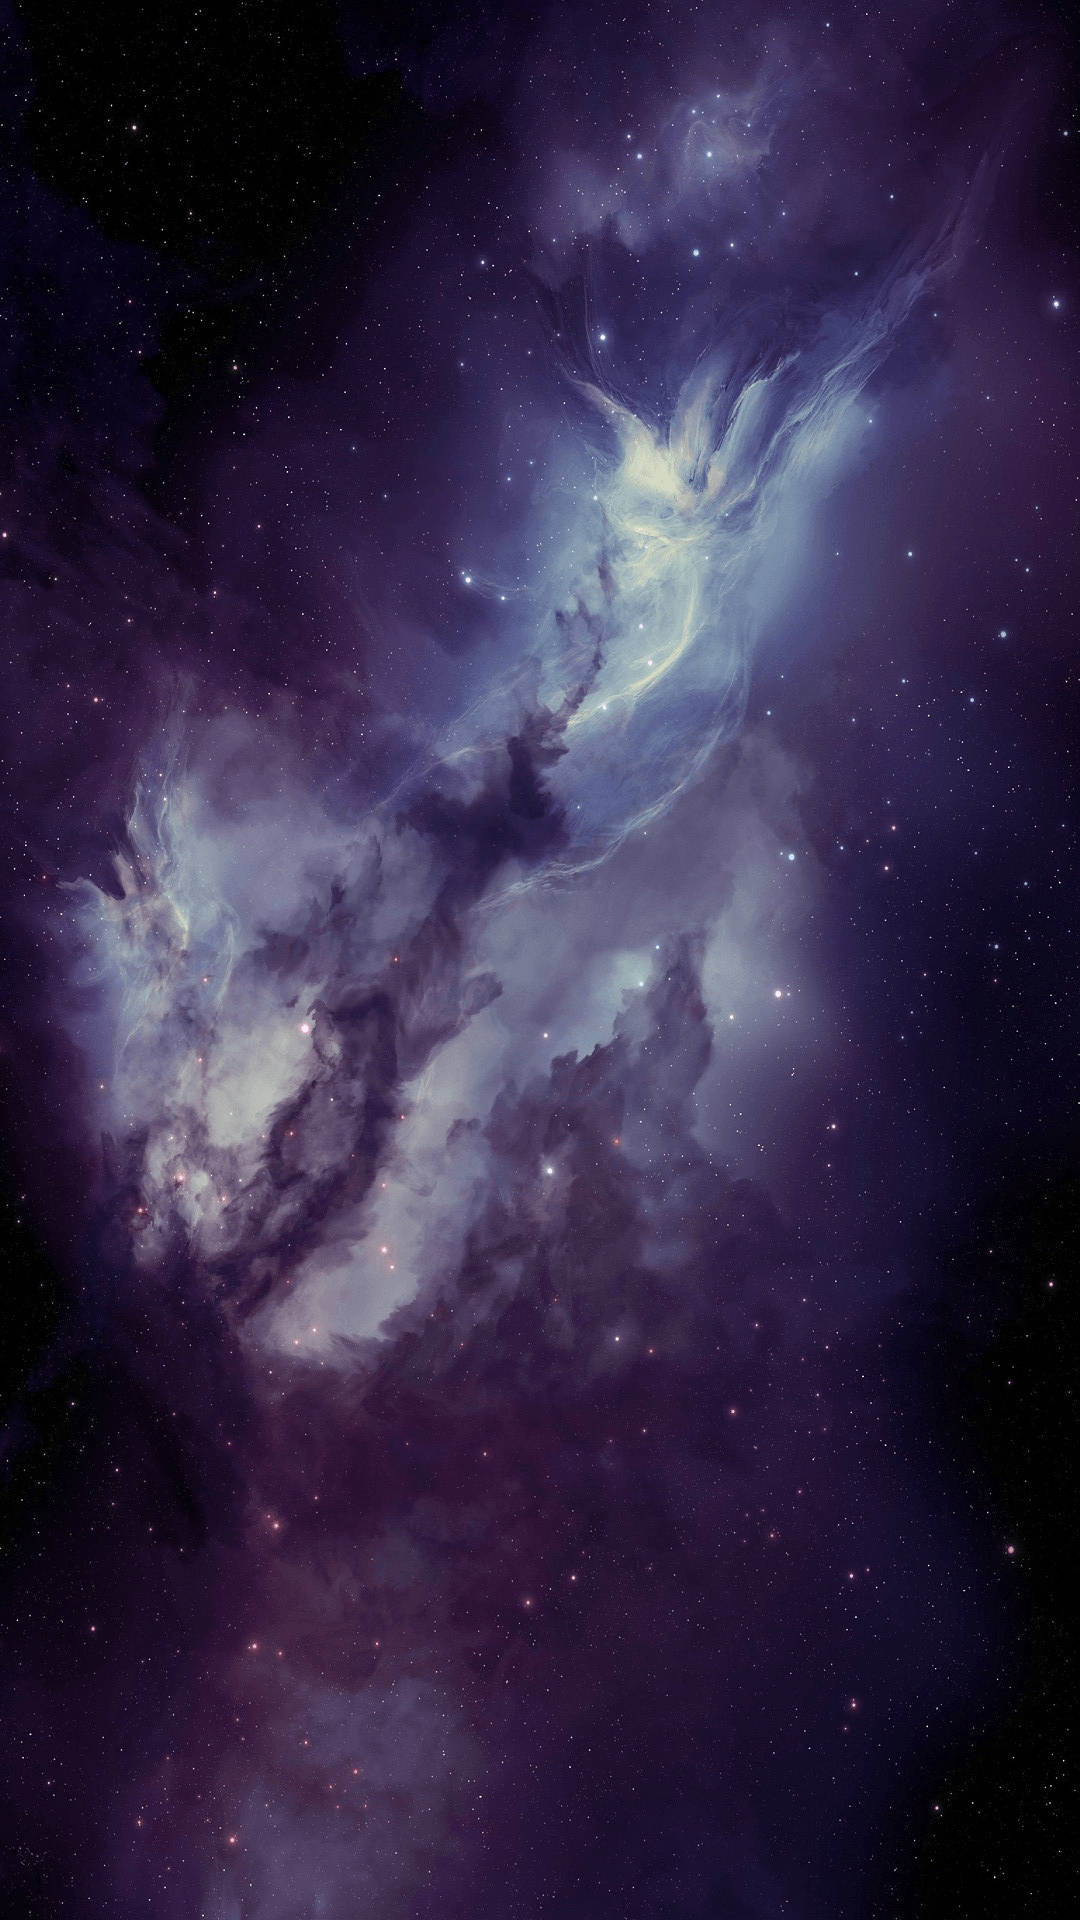 Telefon Nebula Space Wallpaper